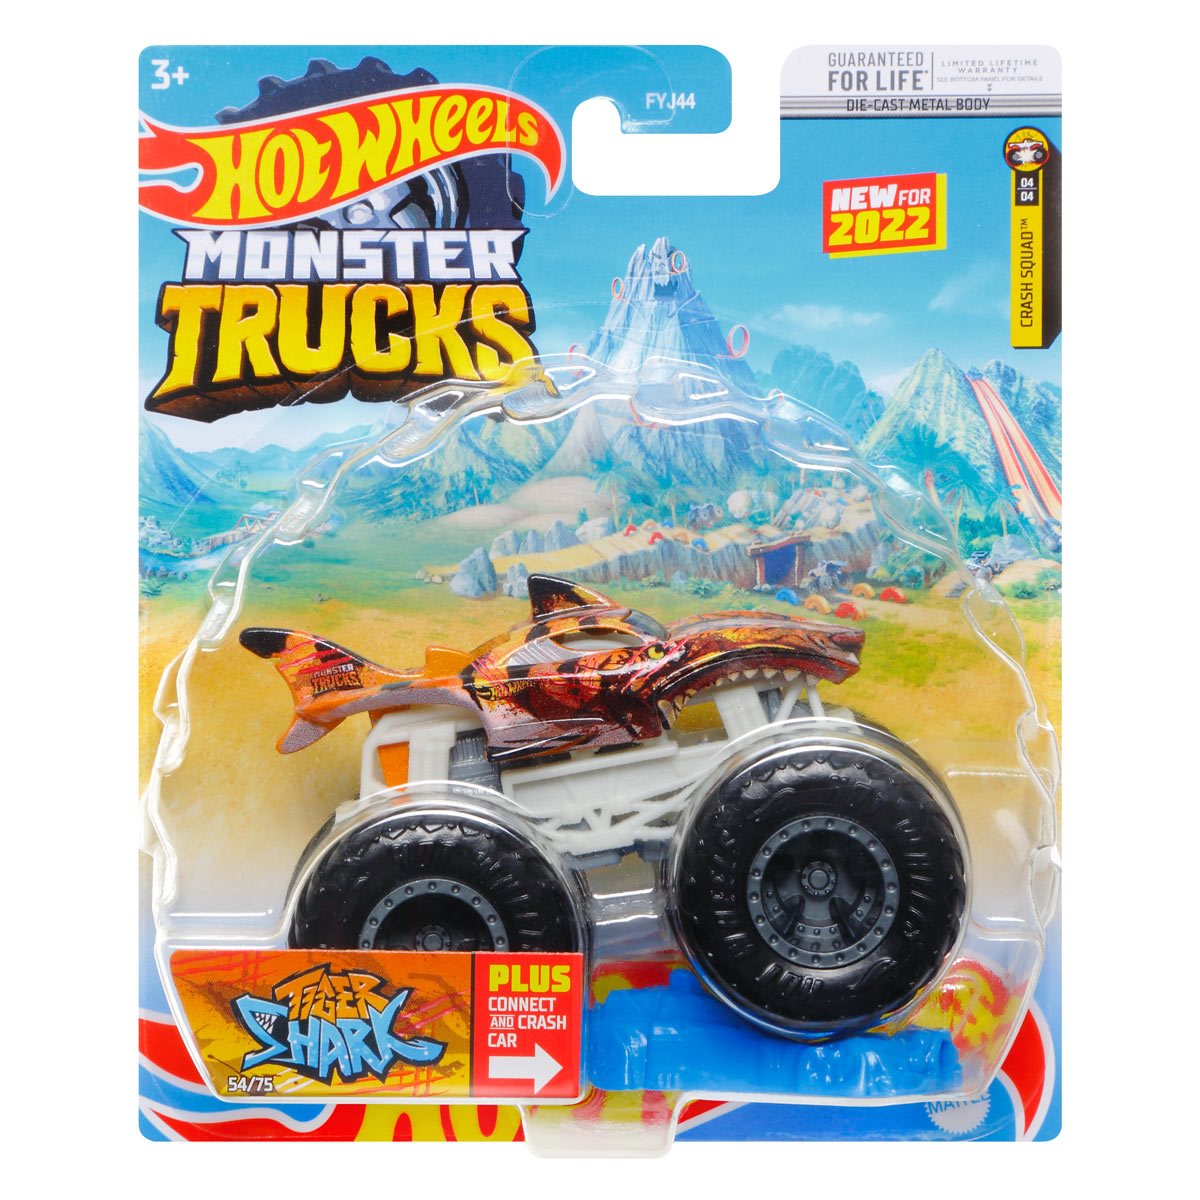  Hot Wheels Monster Trucks Live 8-Pack, Multipack of 1